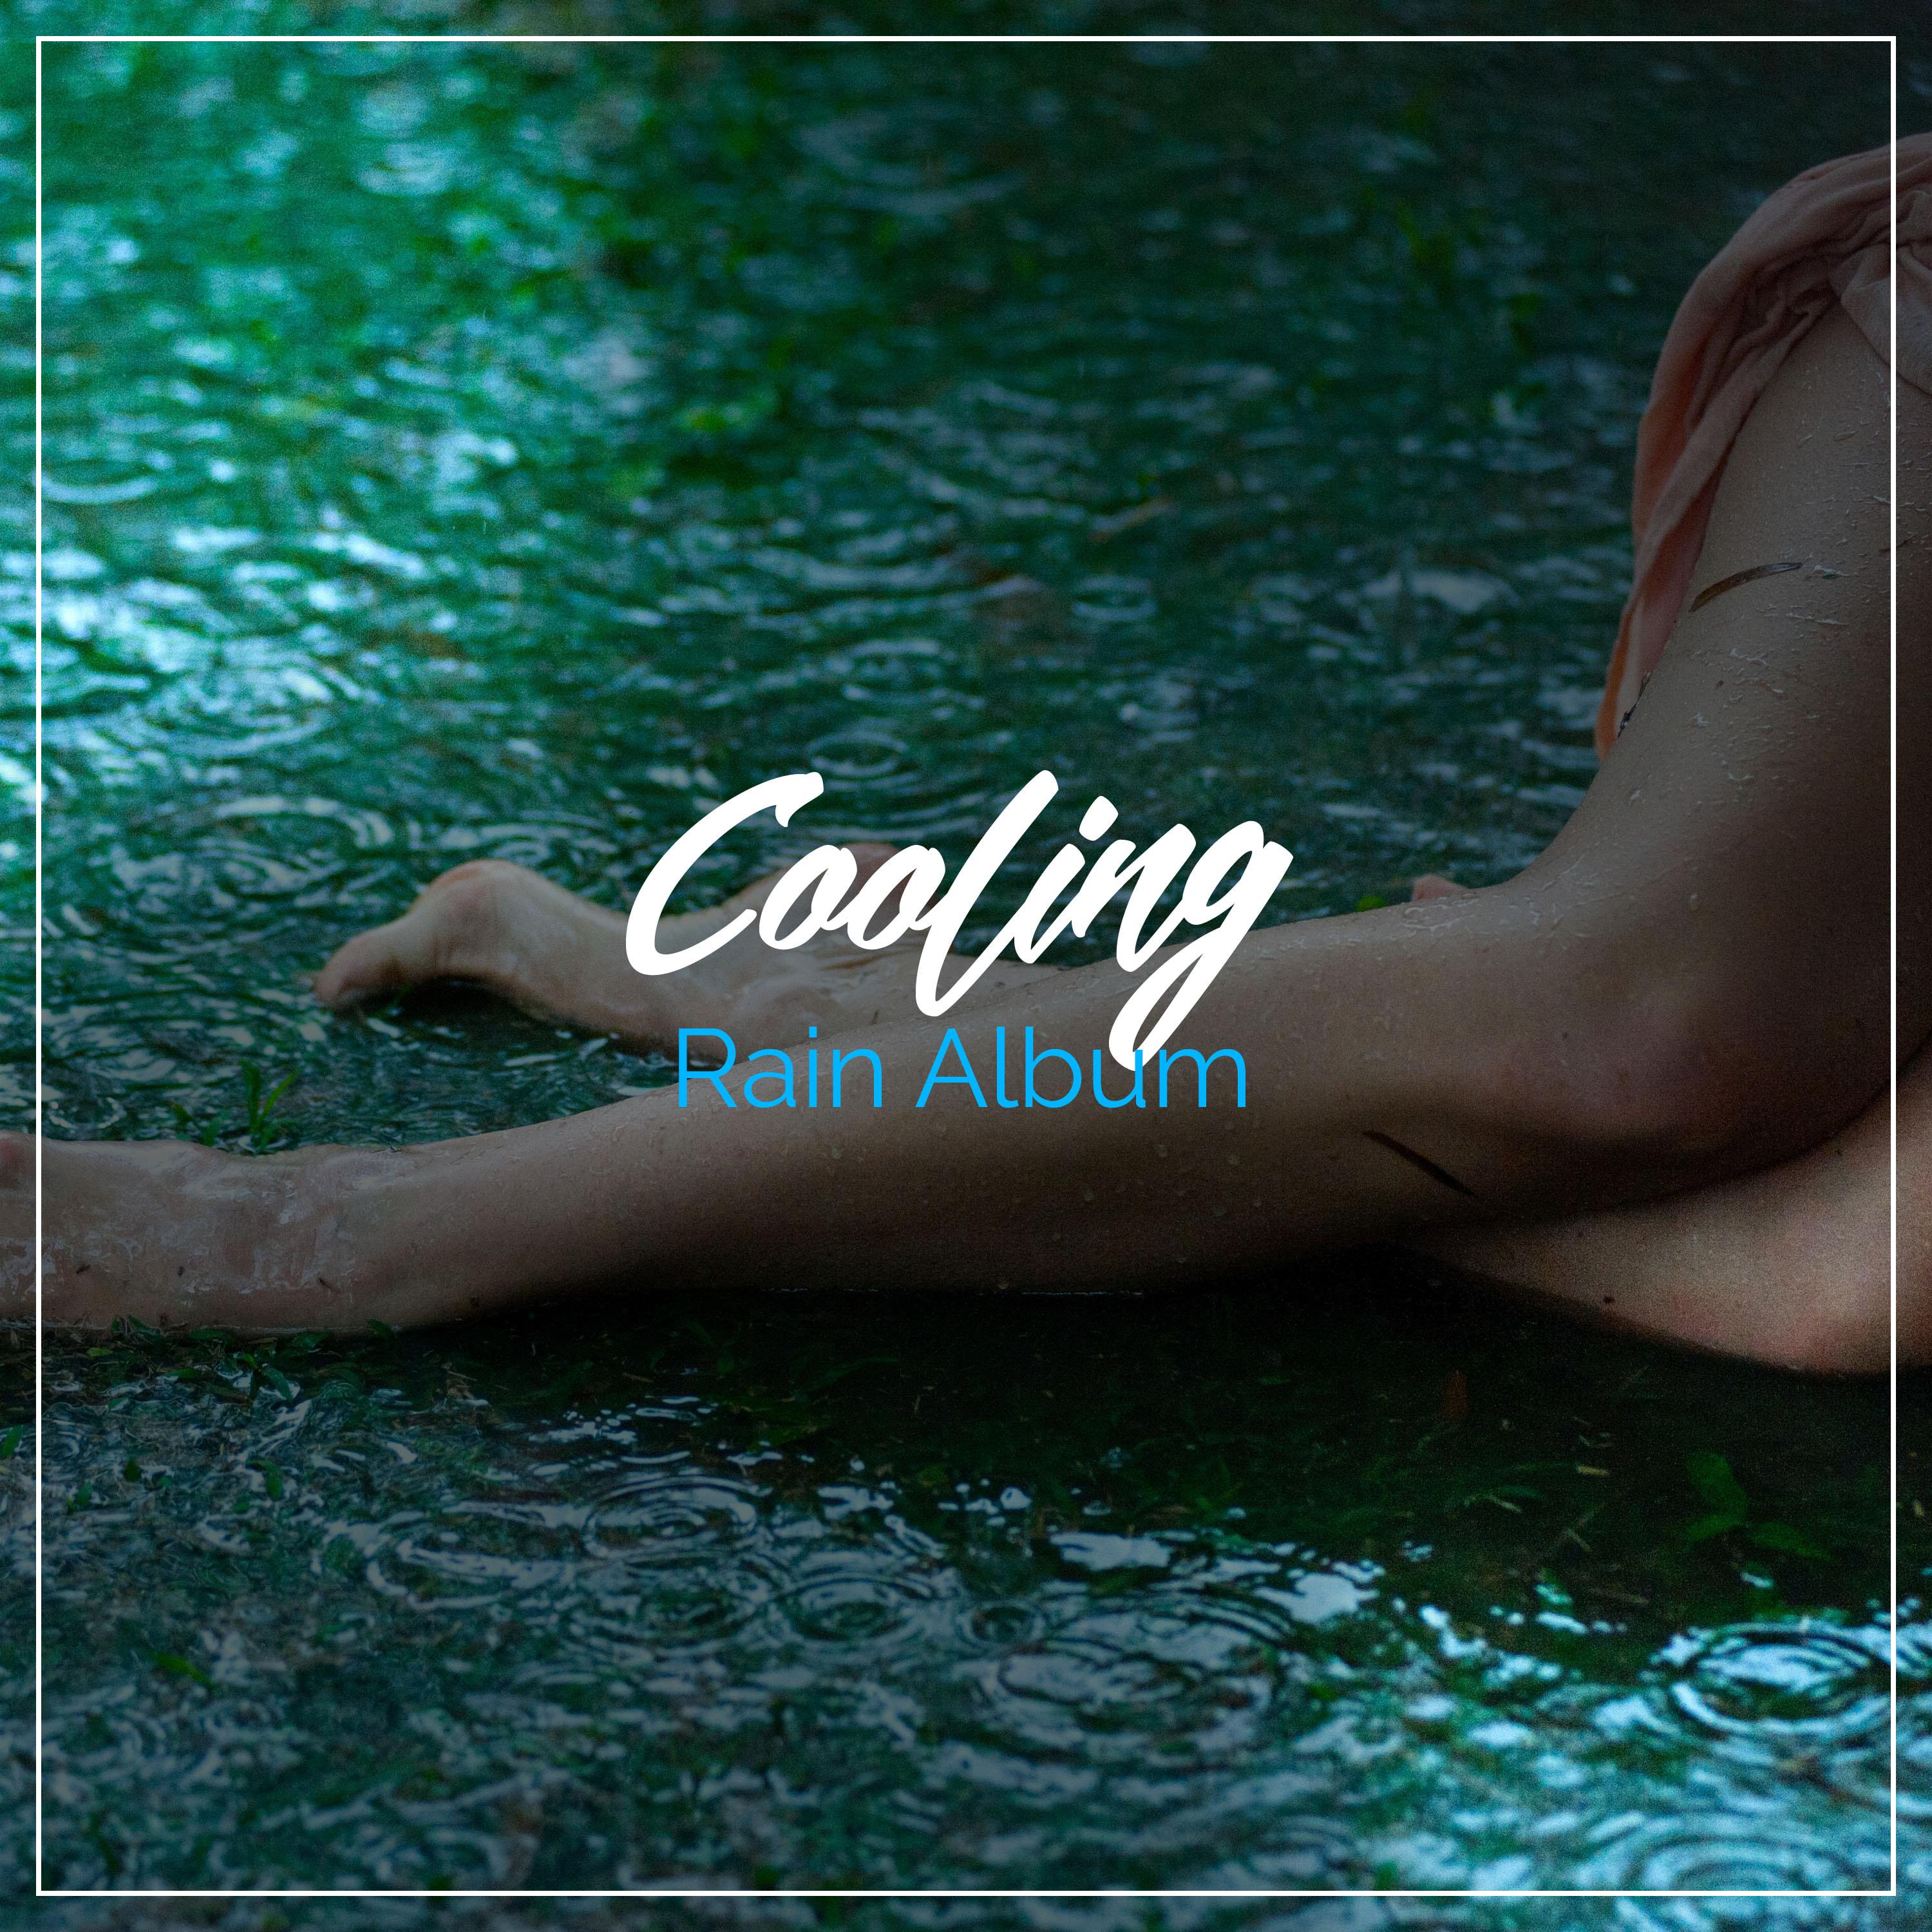 #18 Cooling Rain Album